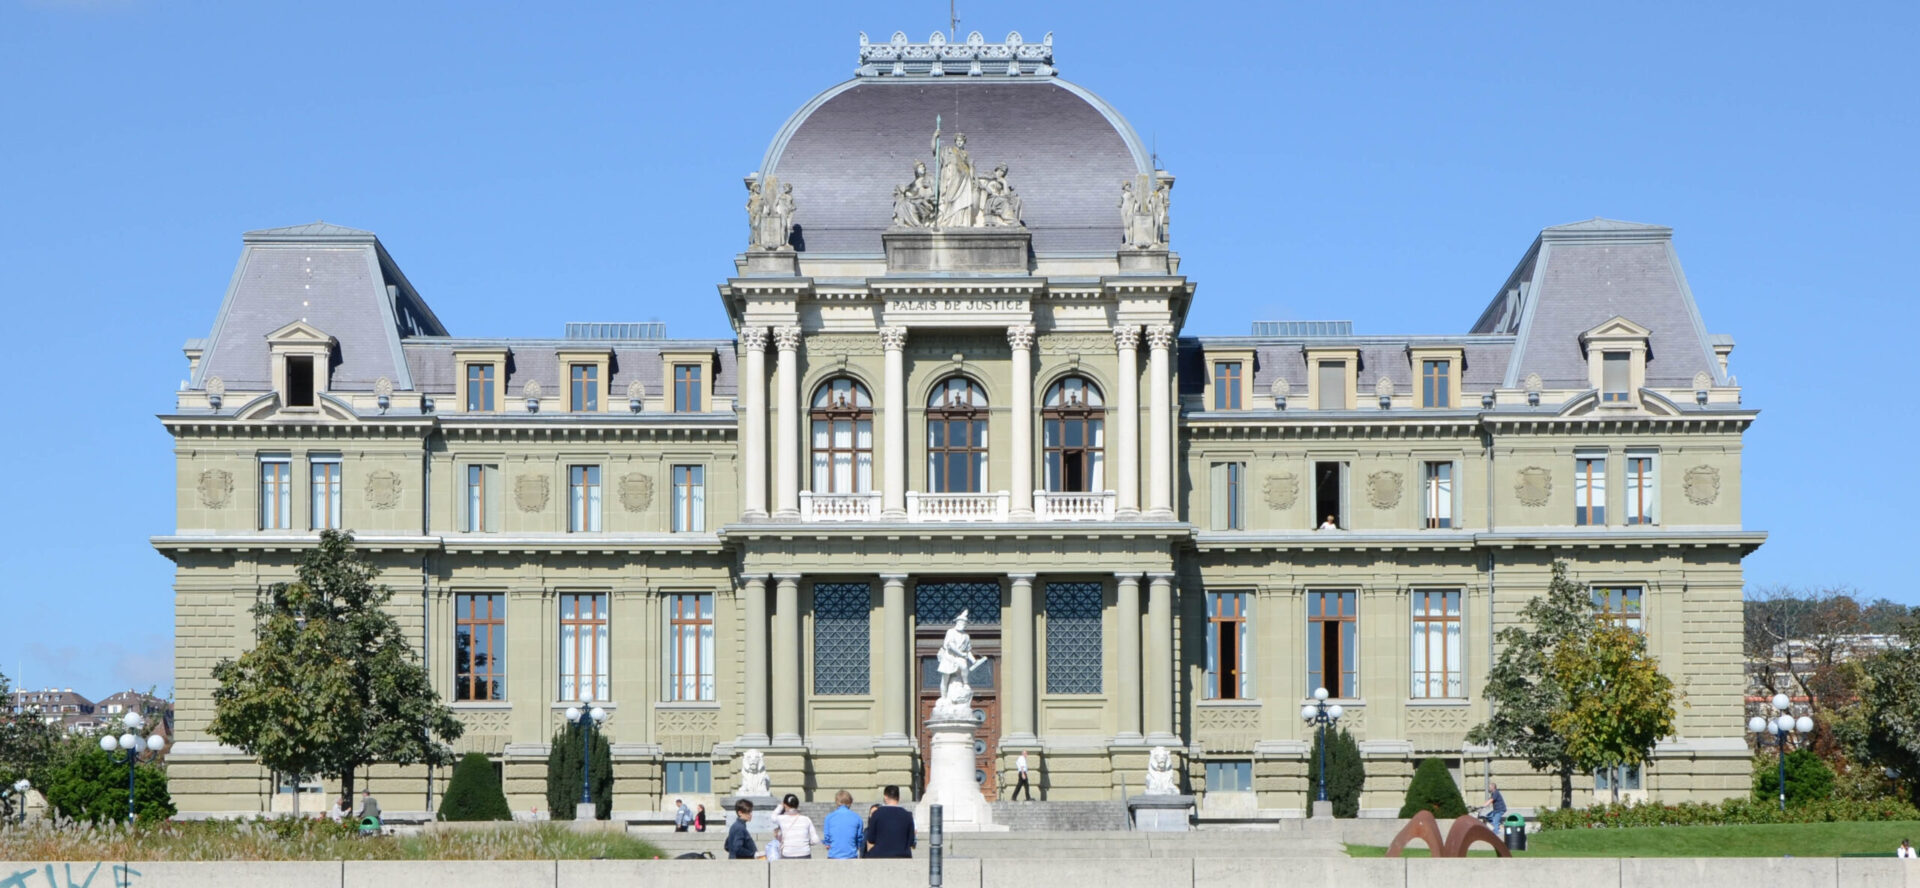 Le Tribunal d'arrondissement de Lausanne | © Jlf Cleaner/Wikimedia/CC BY-SA 3.0